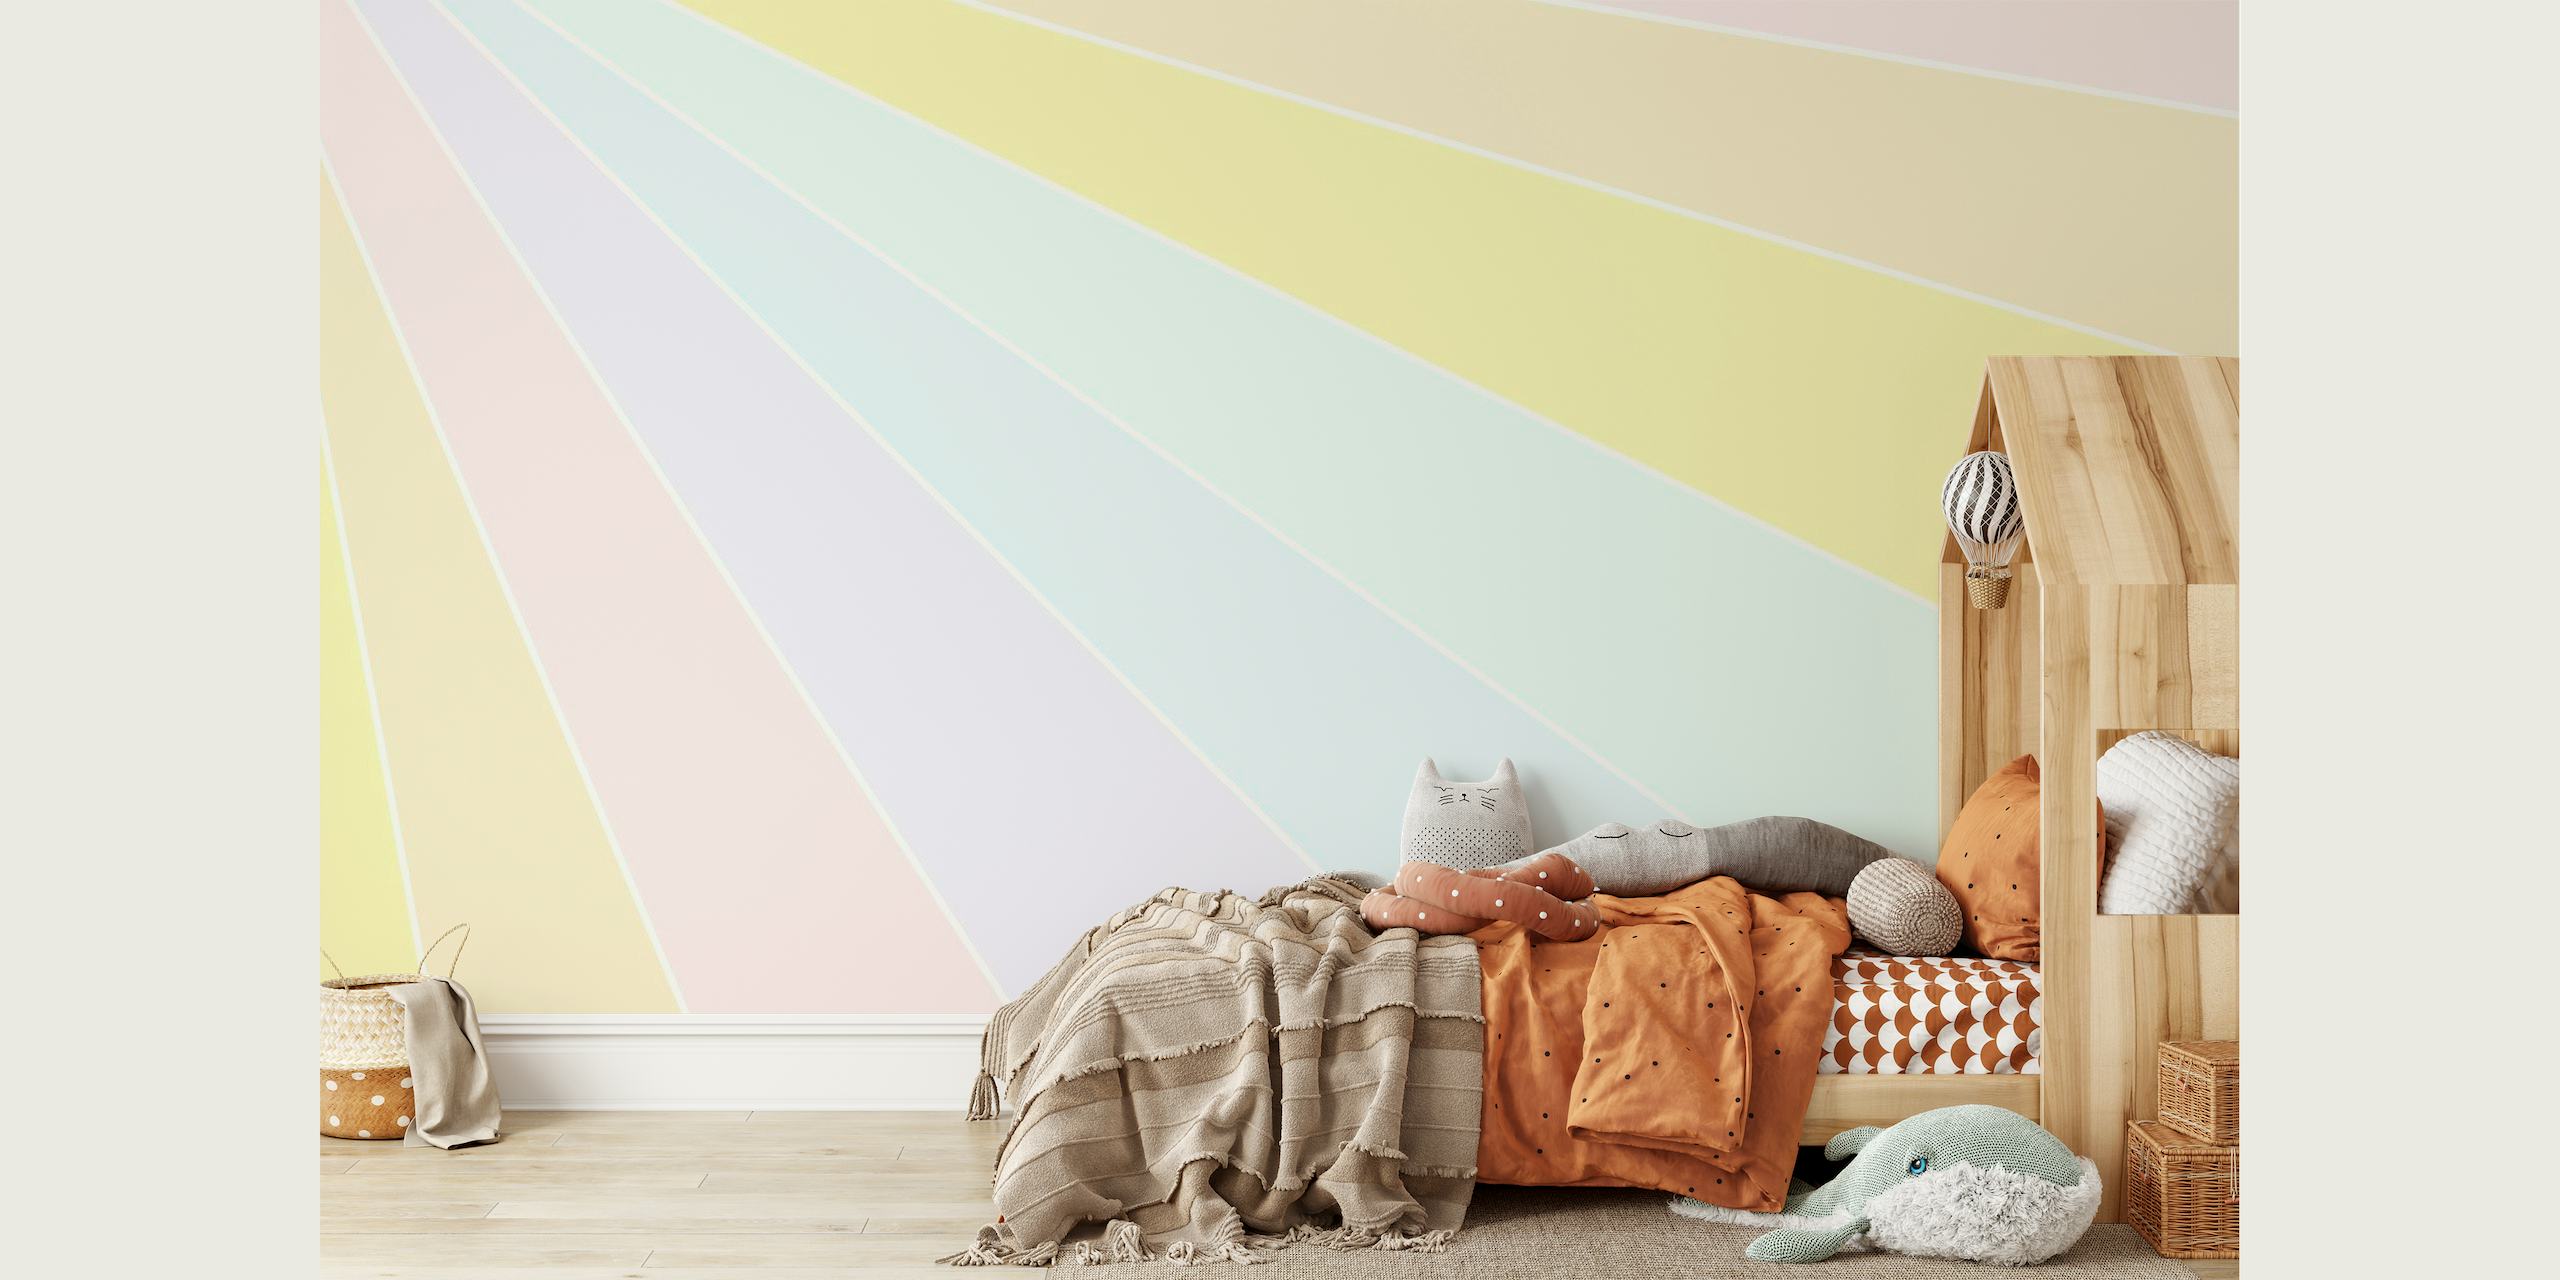 Pastellfarbenes Regenbogen-Wandbild mit weichen, traumhaften Farbbändern